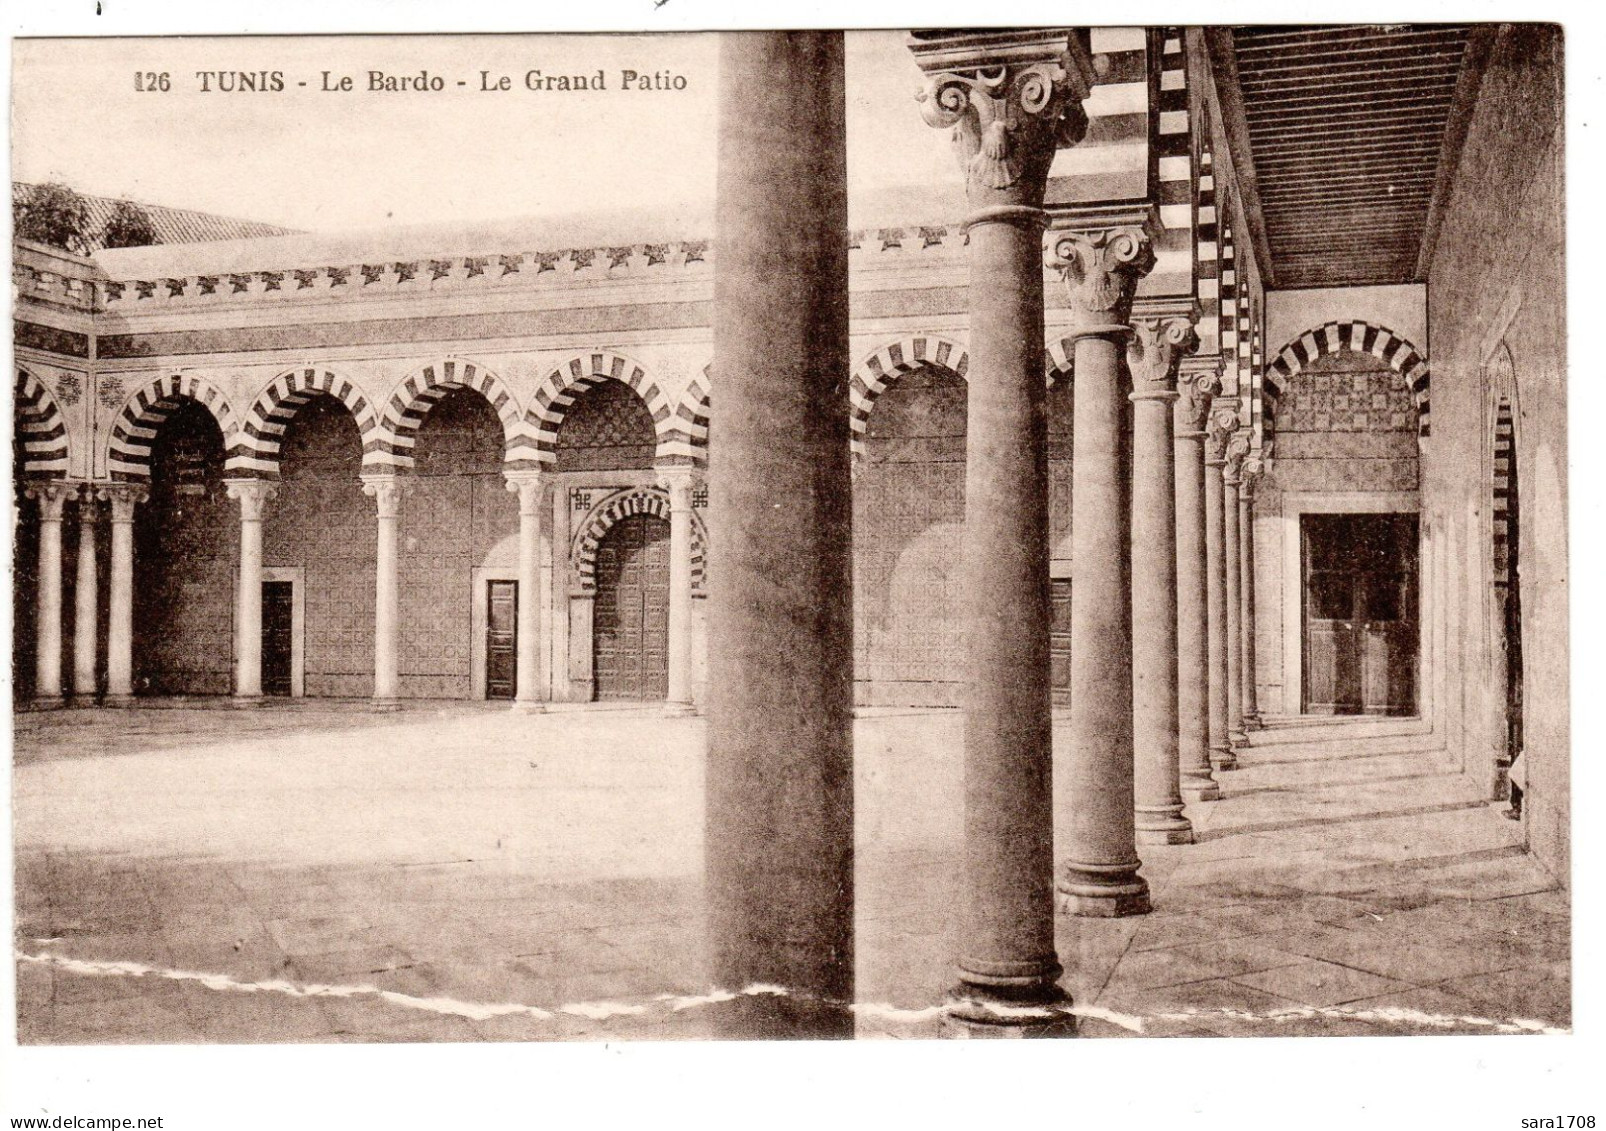 TUNIS, Le Bardo. Le Grand Patio. - Tunisia